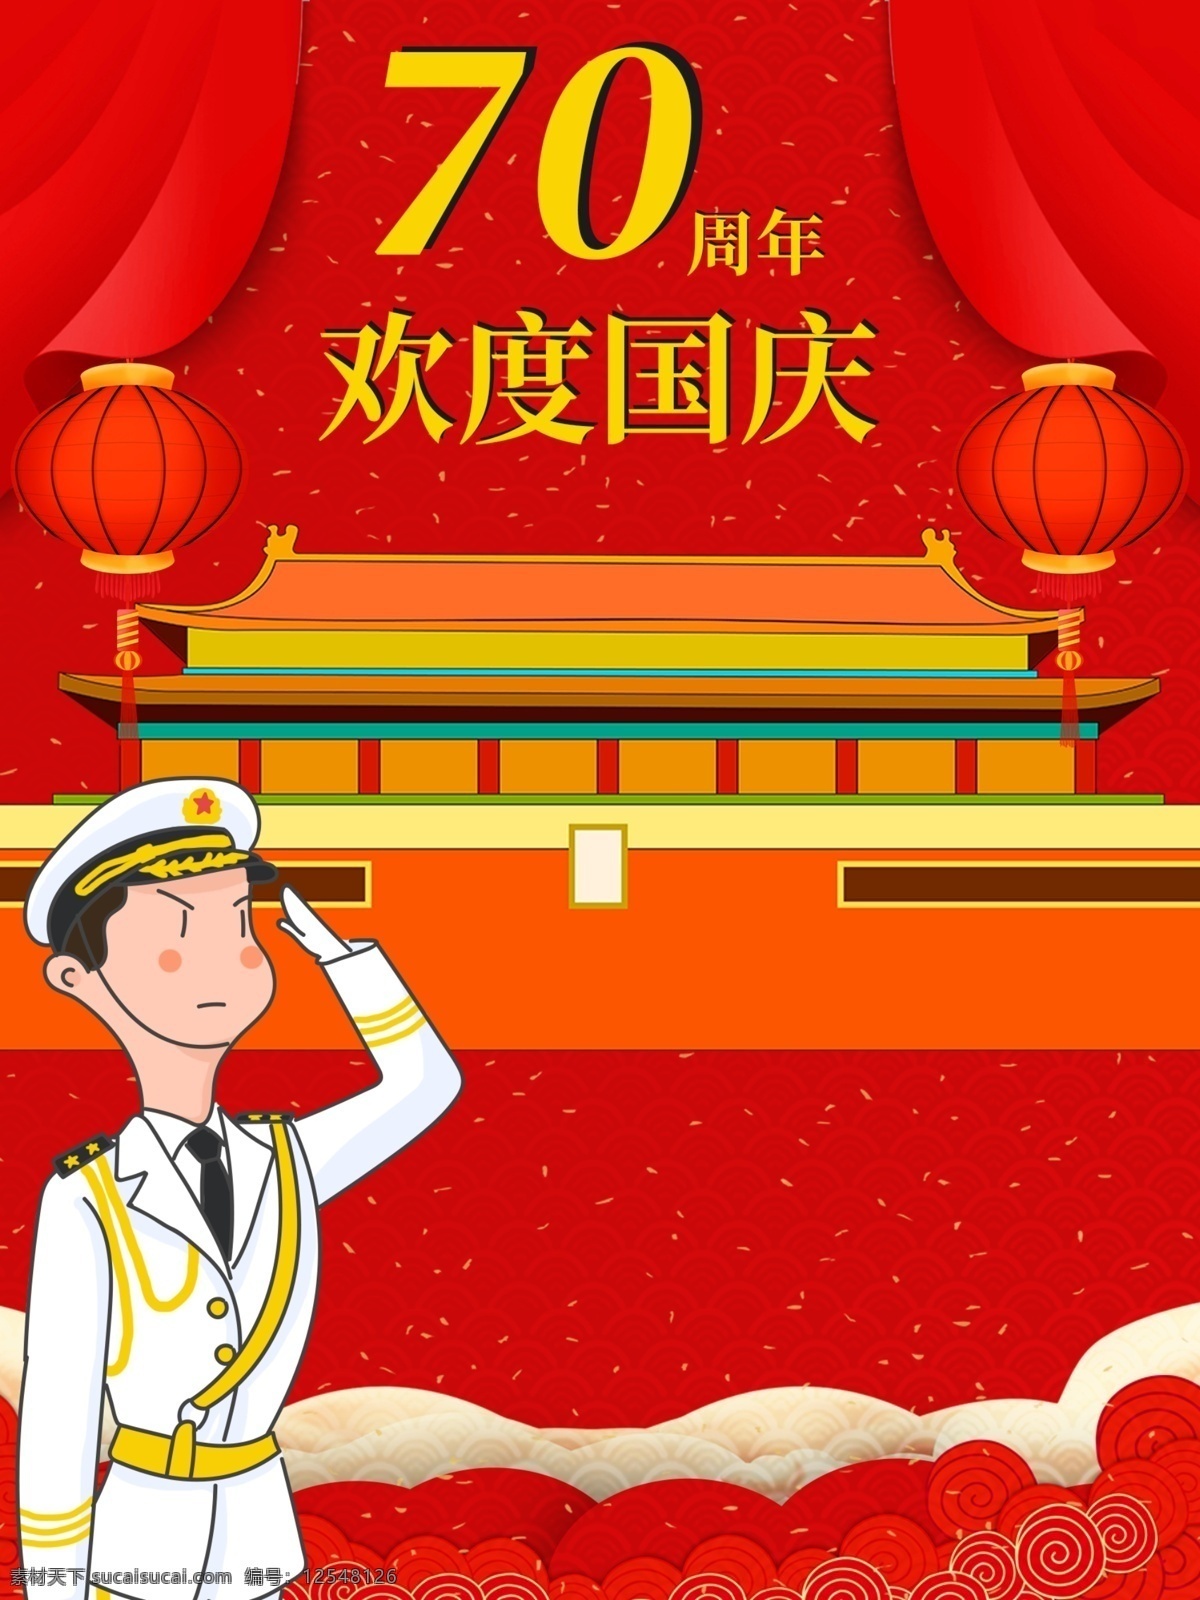 中华人民共和国 周年 节日 国庆 海报 70周年 节日海报 欢度国庆